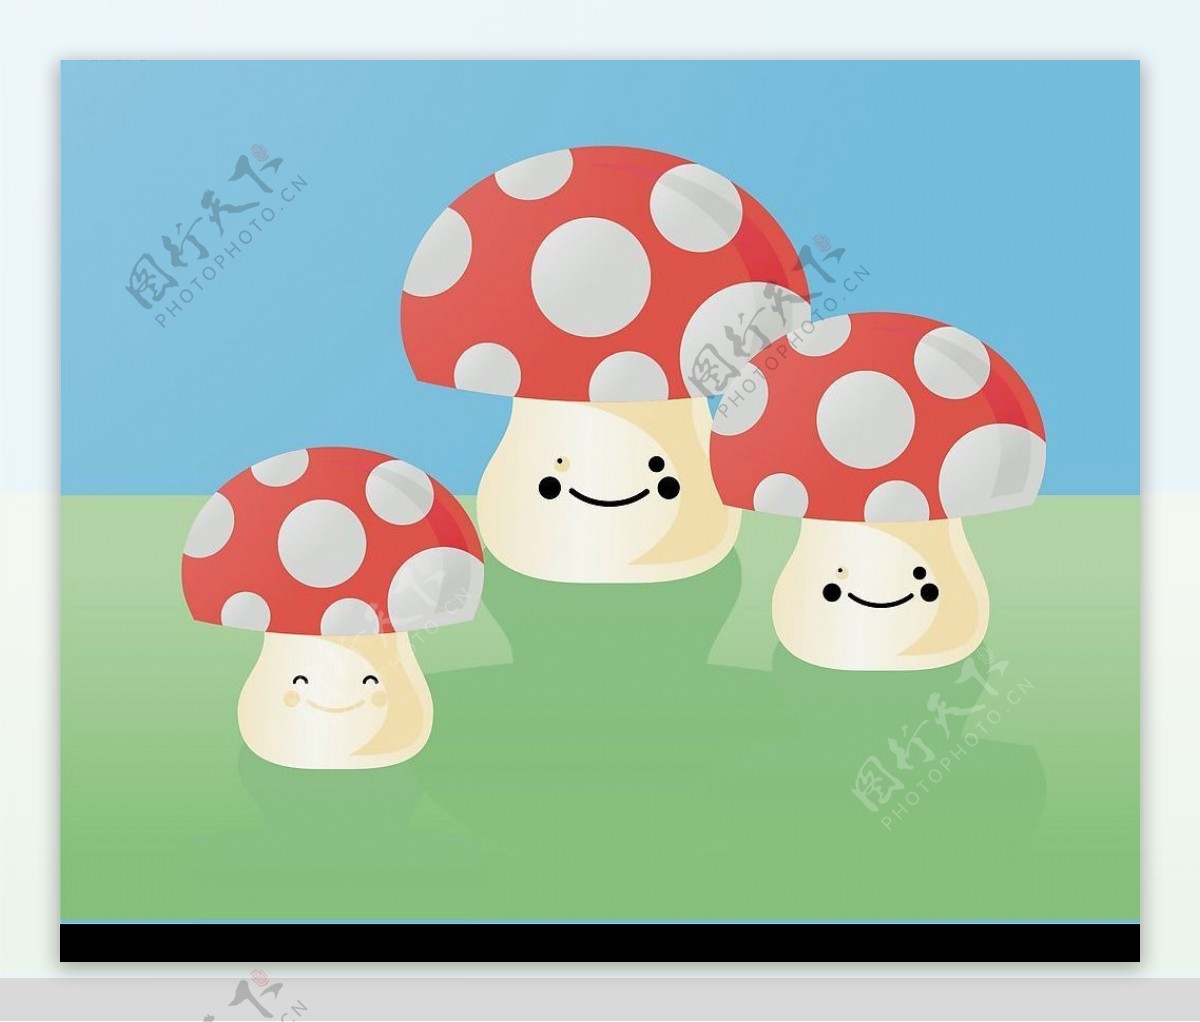 可爱的卡通蘑菇人图片